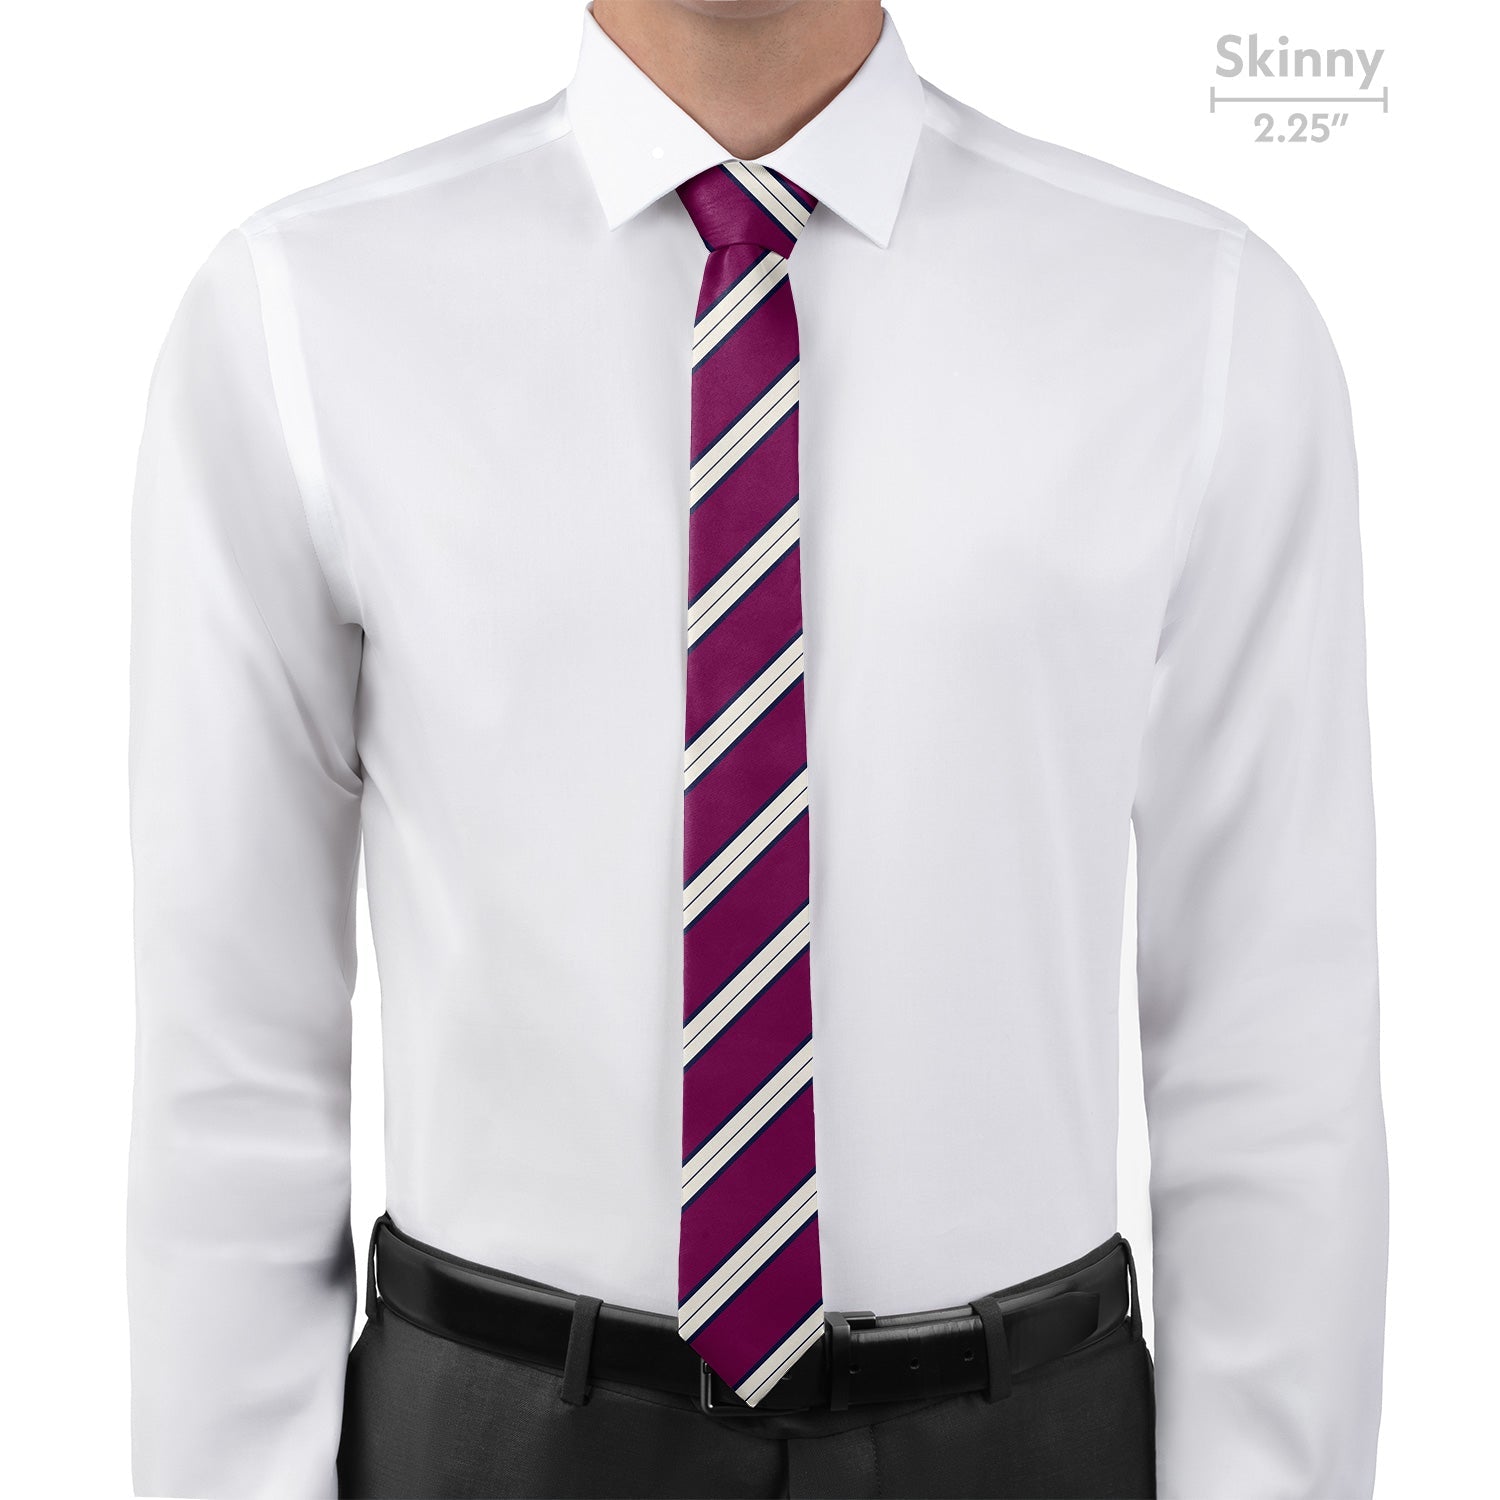 Kalamath Stripe Necktie - Skinny - Knotty Tie Co.